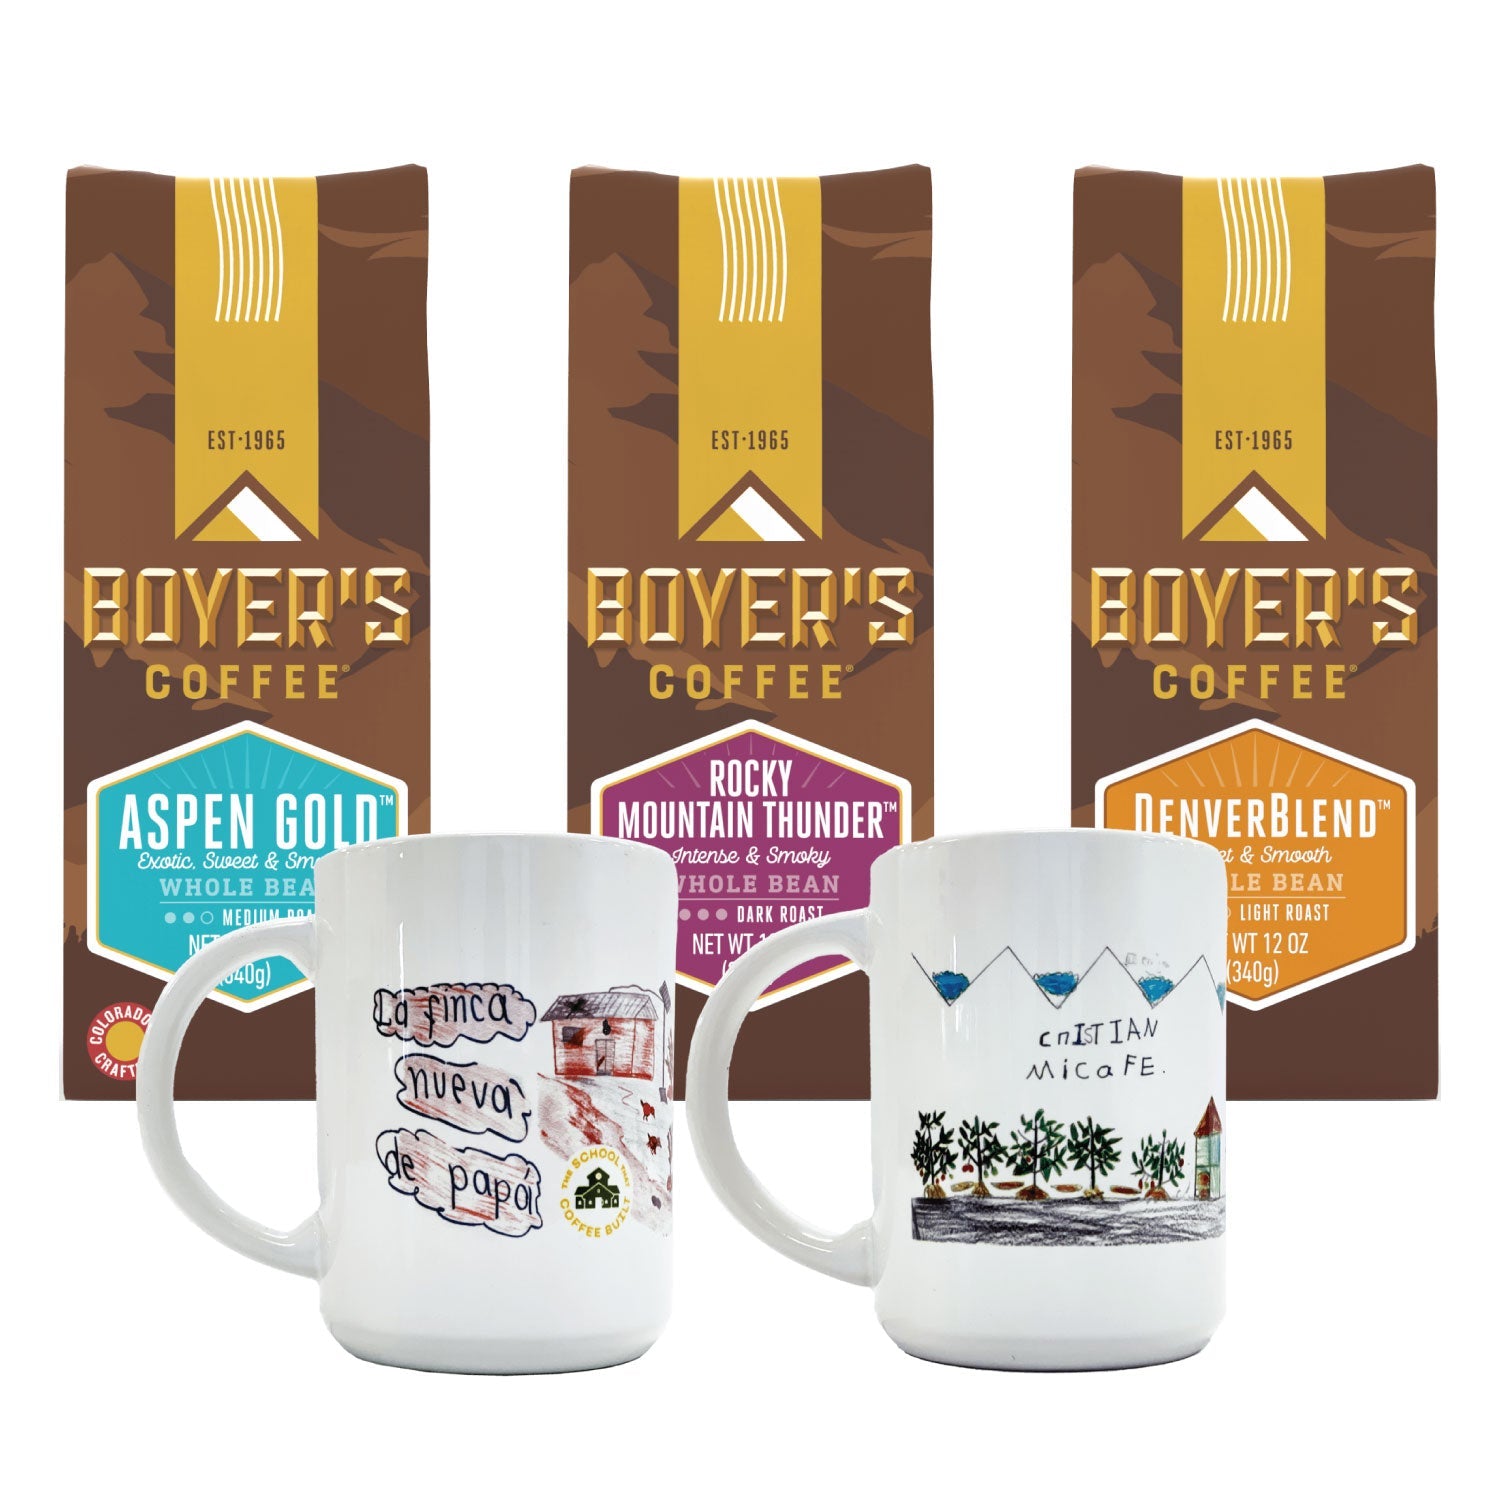 http://www.boyerscoffee.com/cdn/shop/products/boyers-tstcb-mug-set-1-esmerelda.jpg?v=1666032869